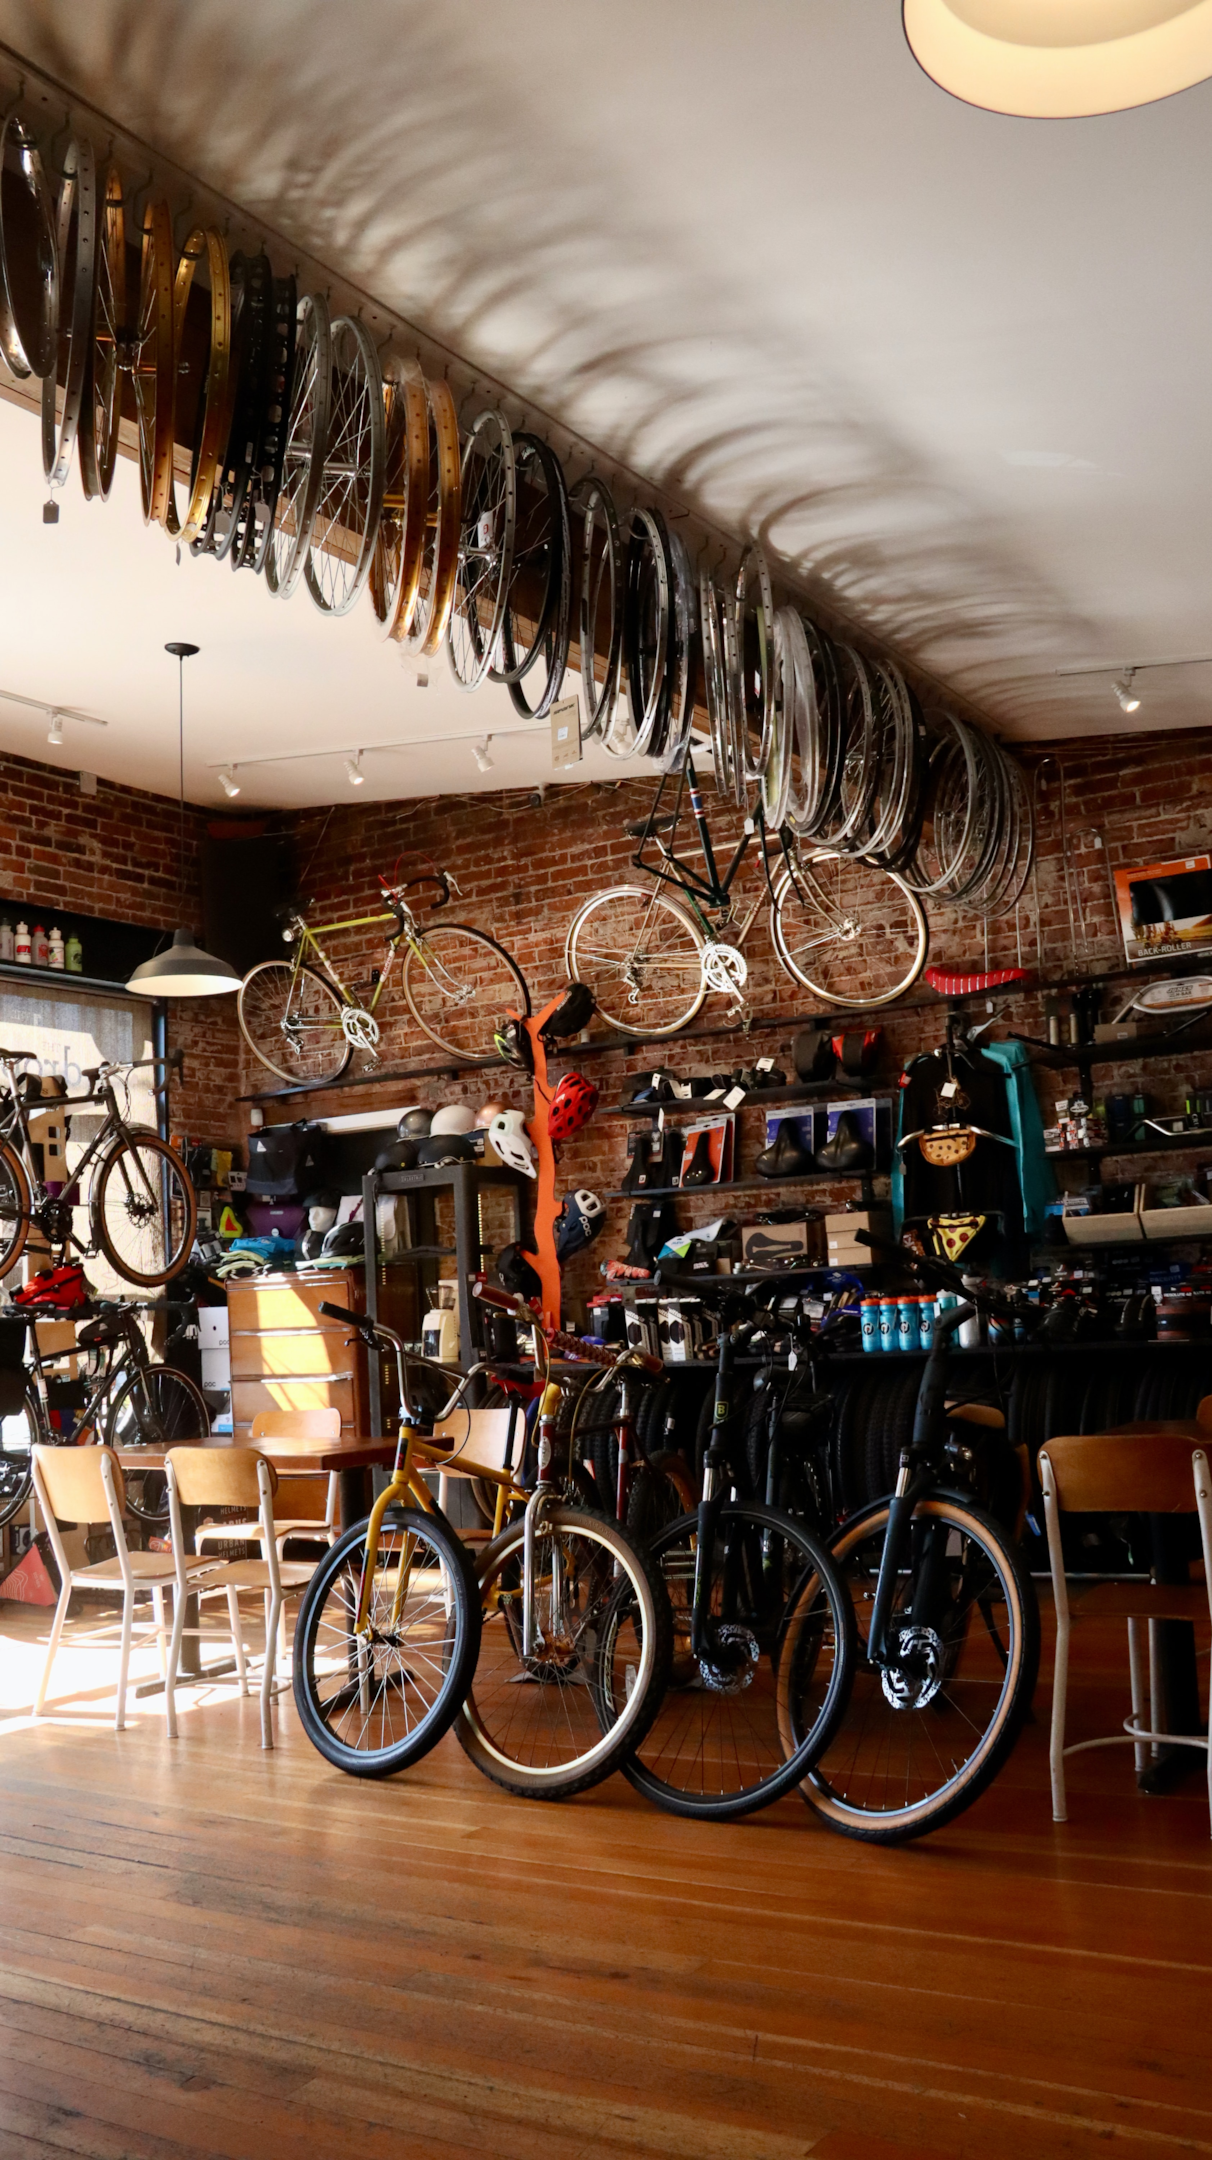 Loja especializada em bicicletas. Créditos: Unsplash, Manny Becerra